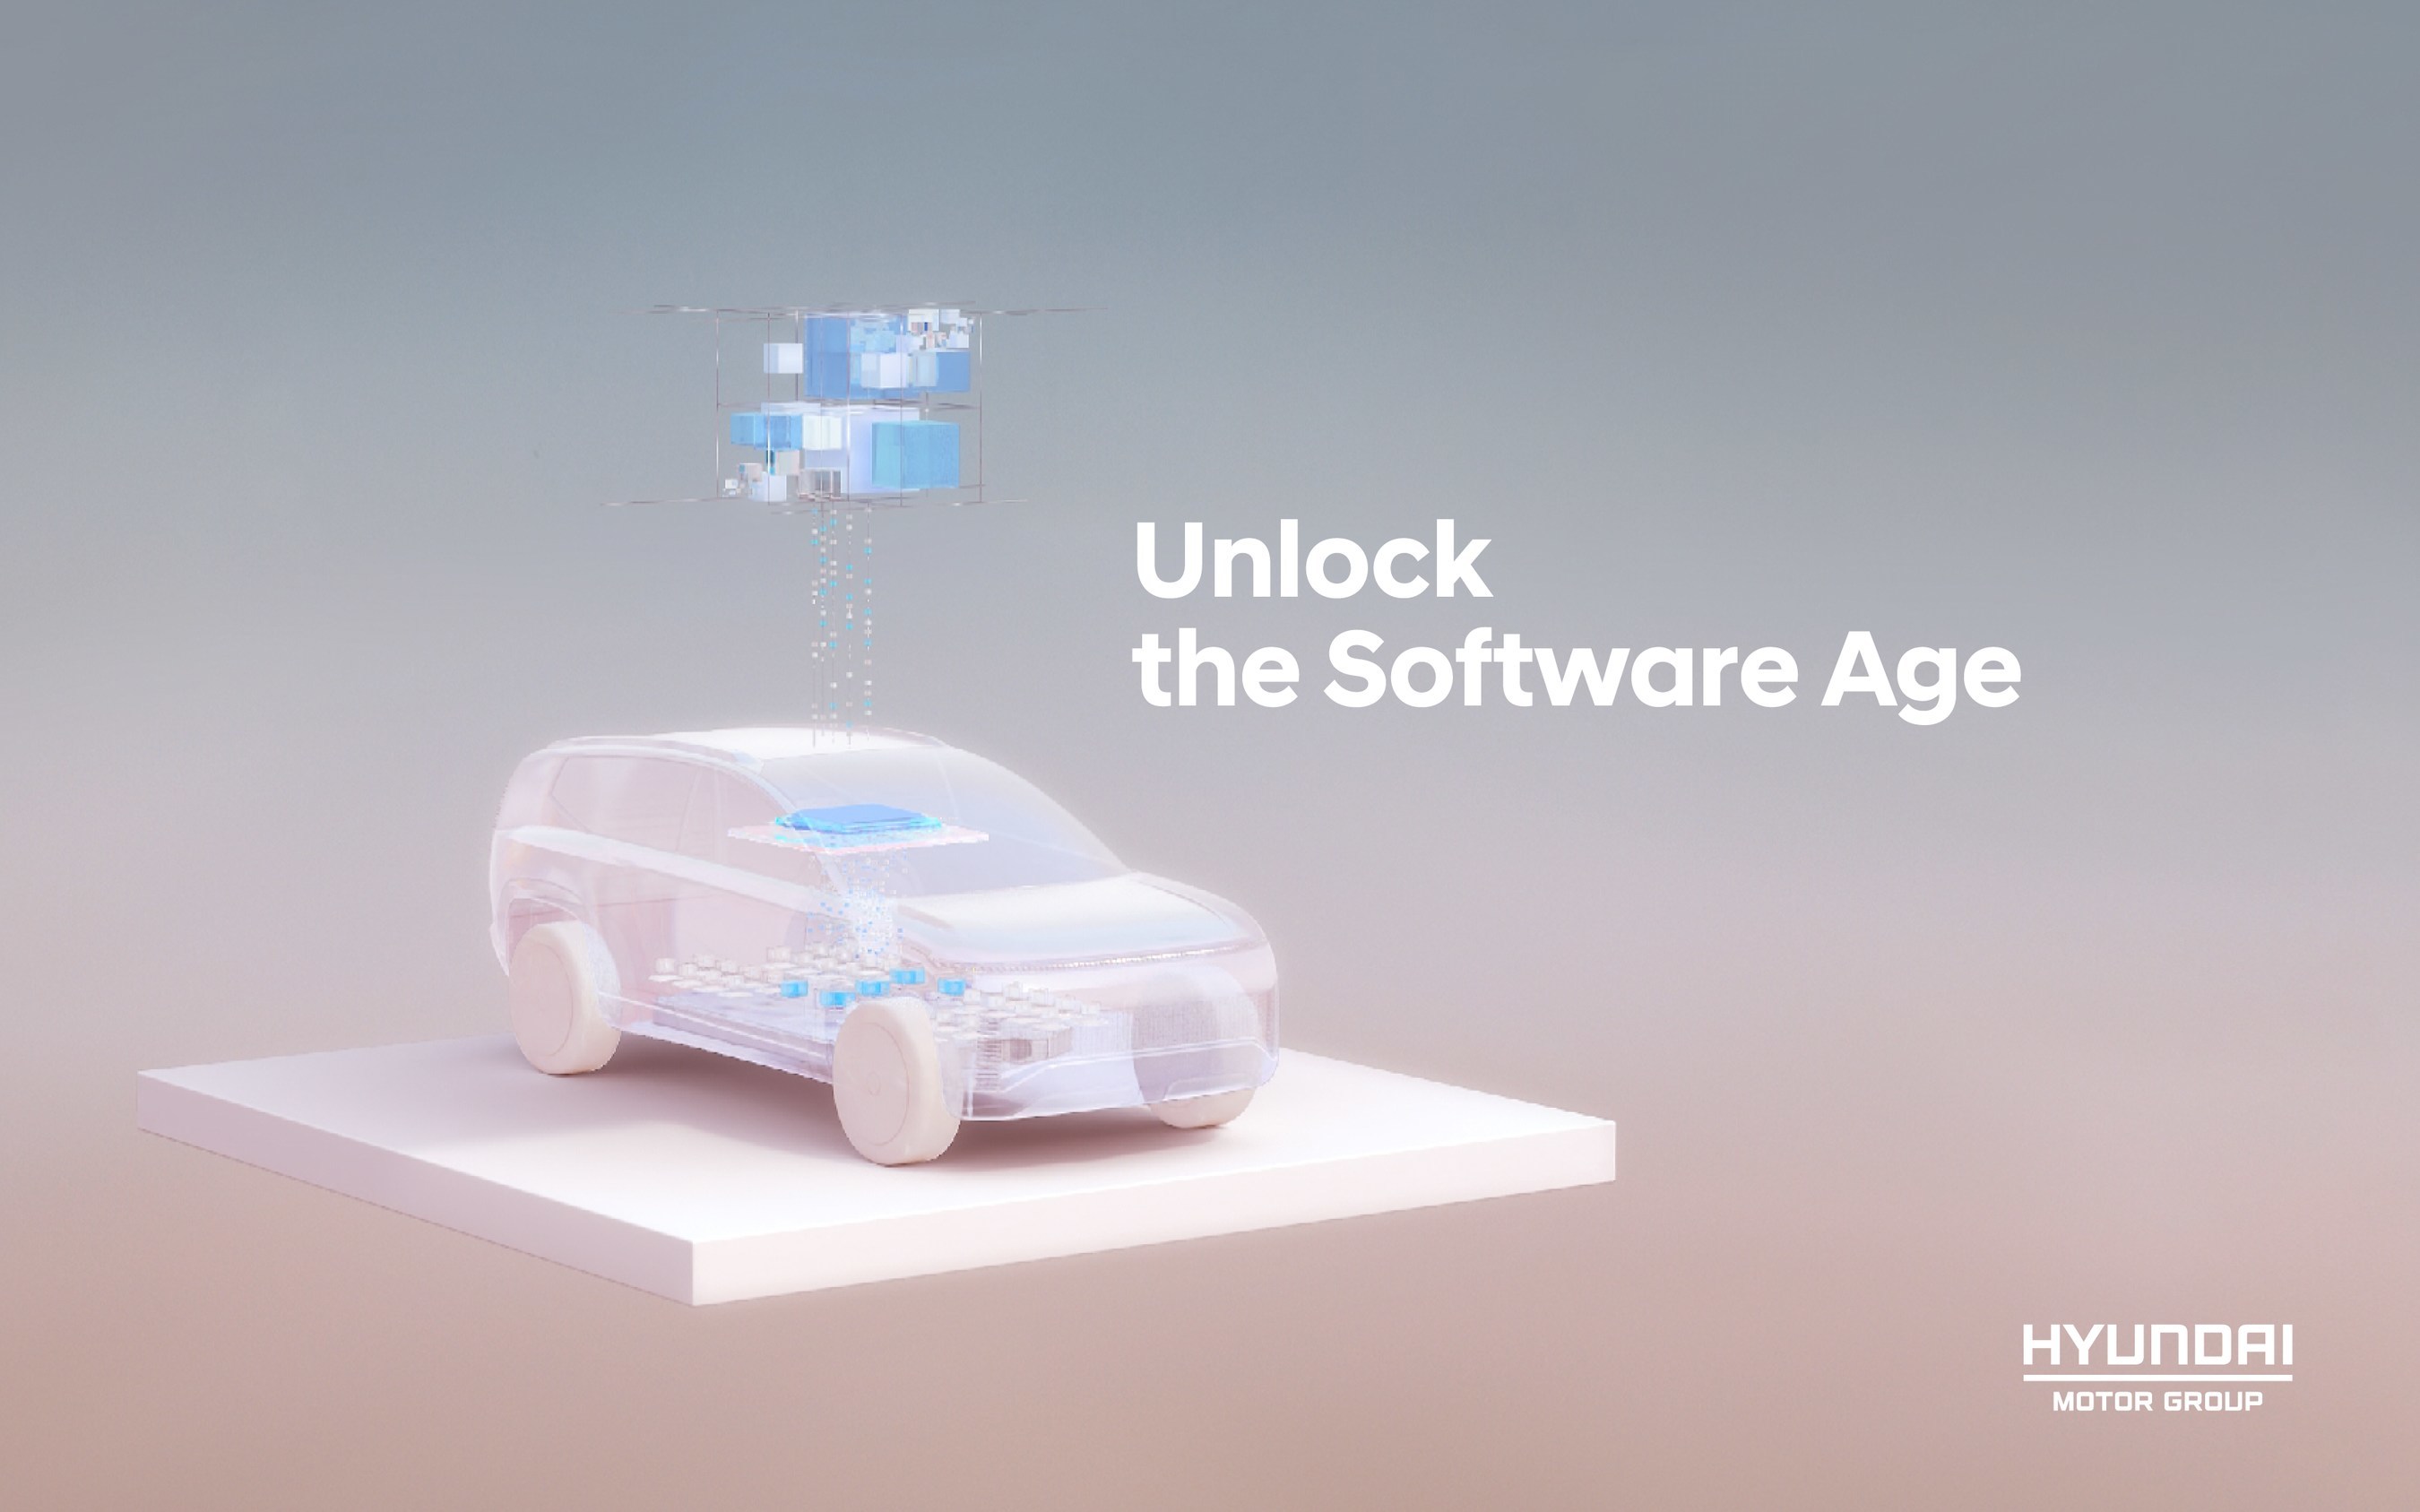 现代汽车到2025年将旗下全款车型升级为“软件定义汽车” | 美通社